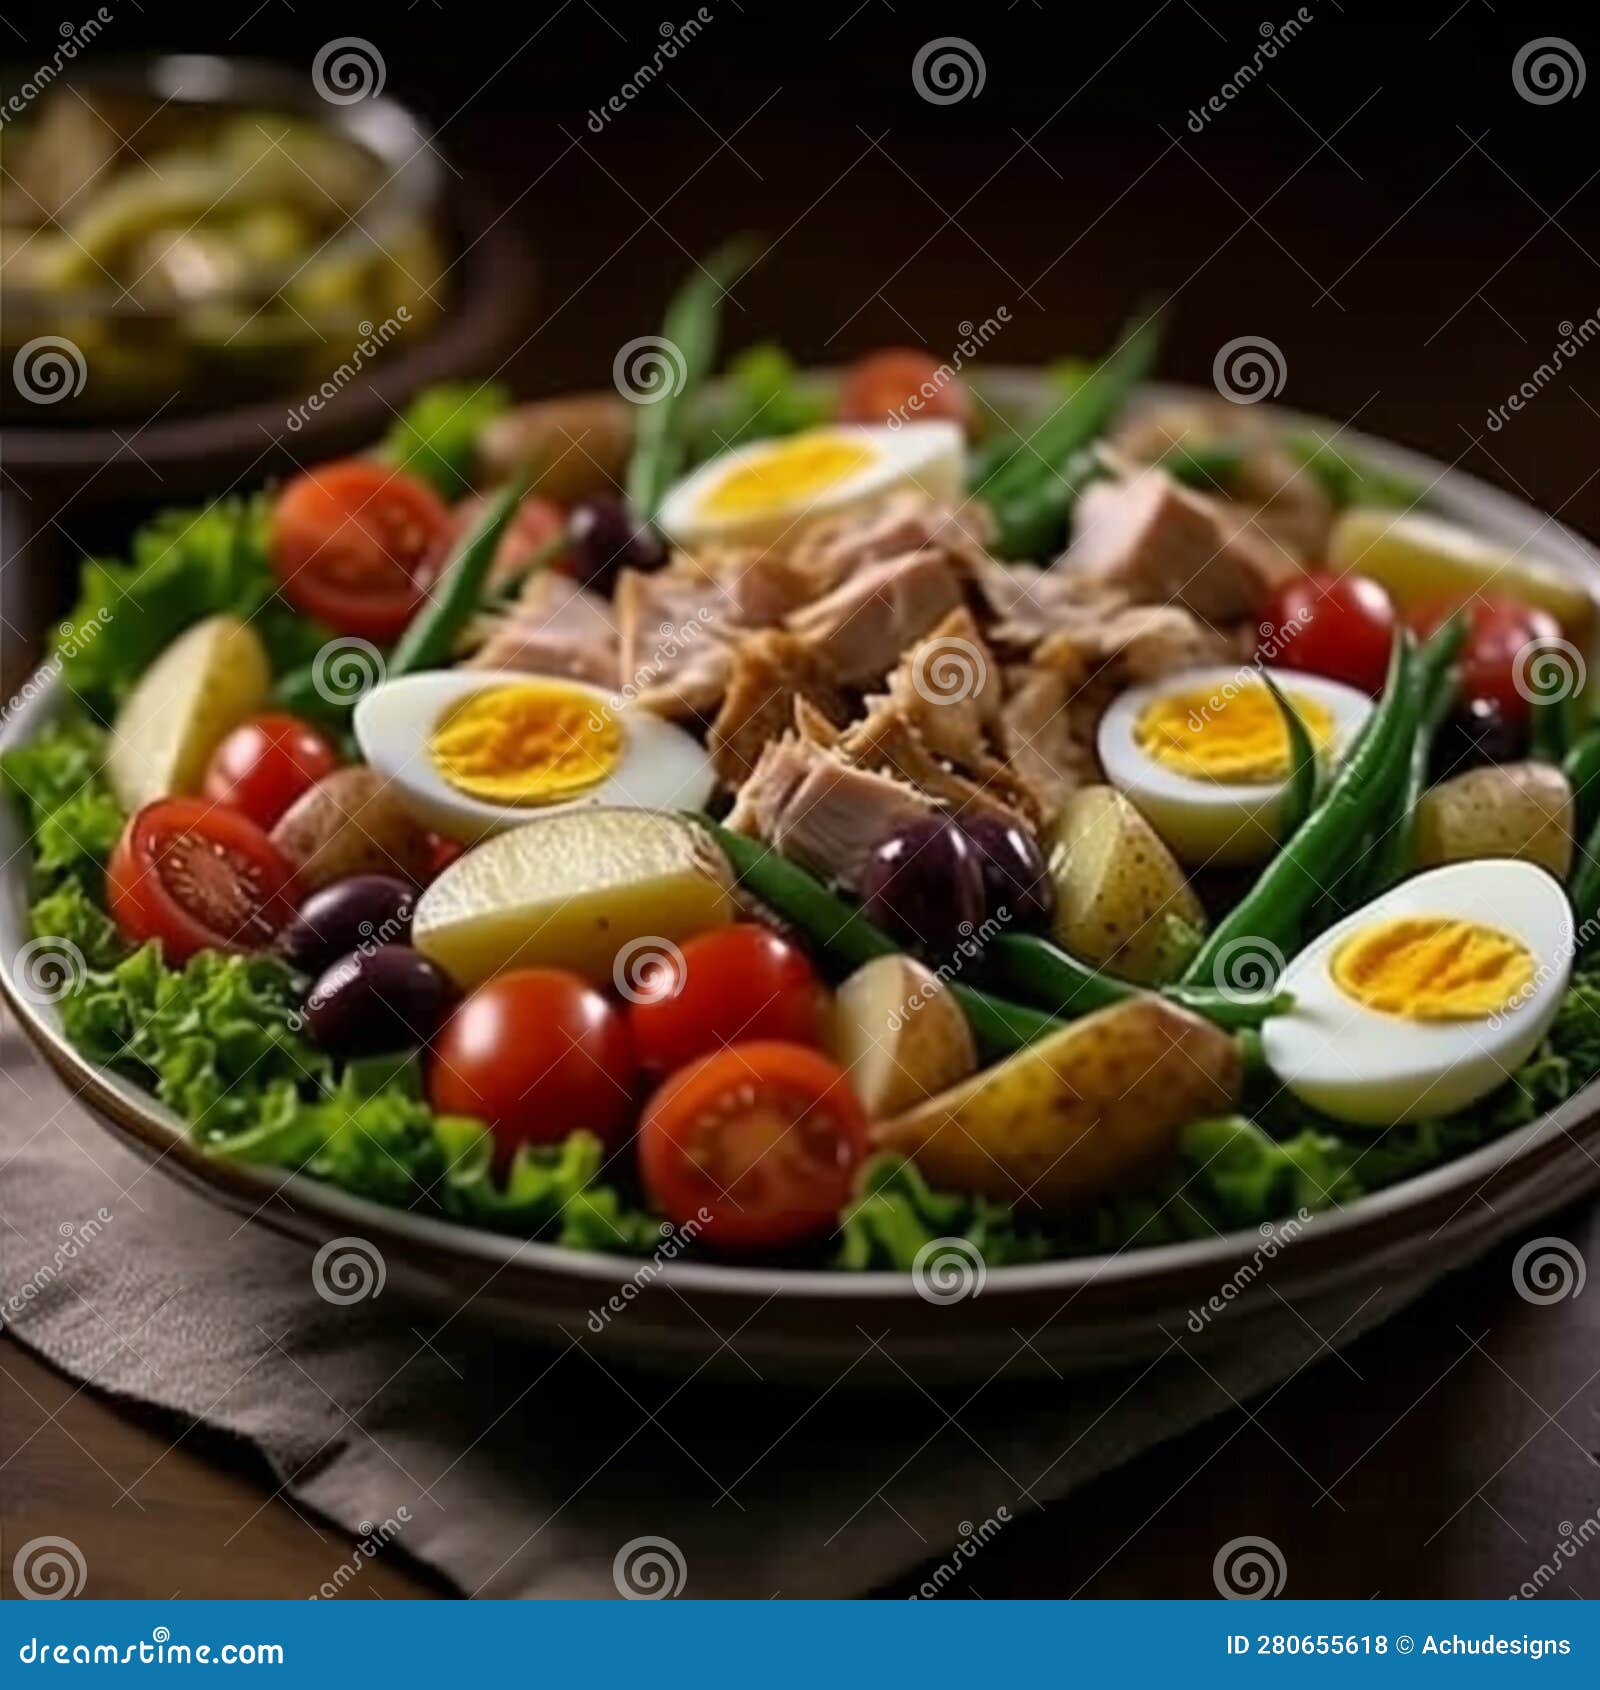 niÃ§oise salad